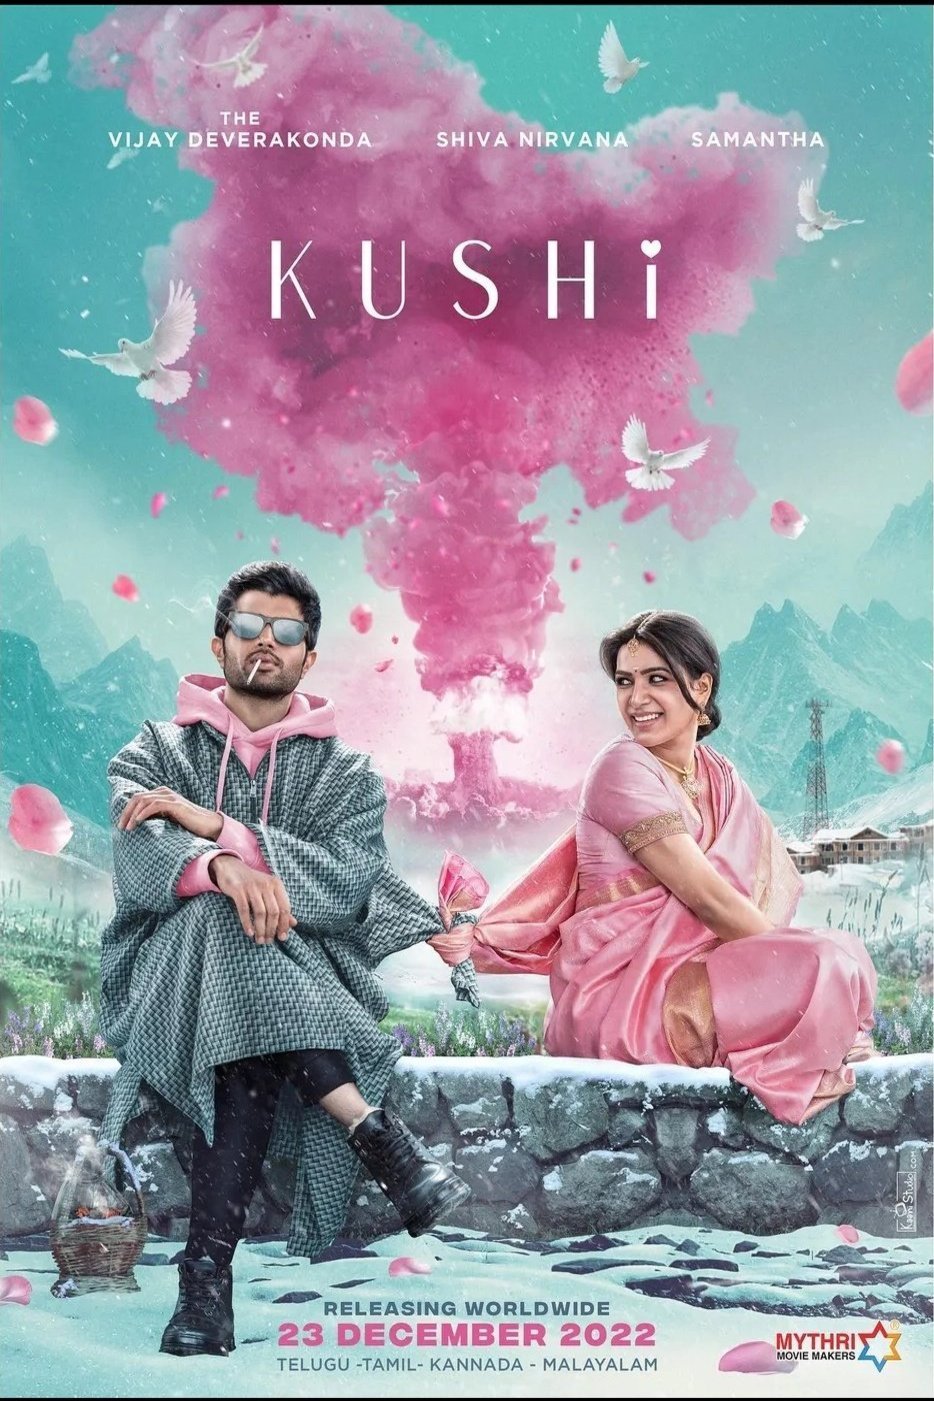 Telugu poster of the movie Kushi